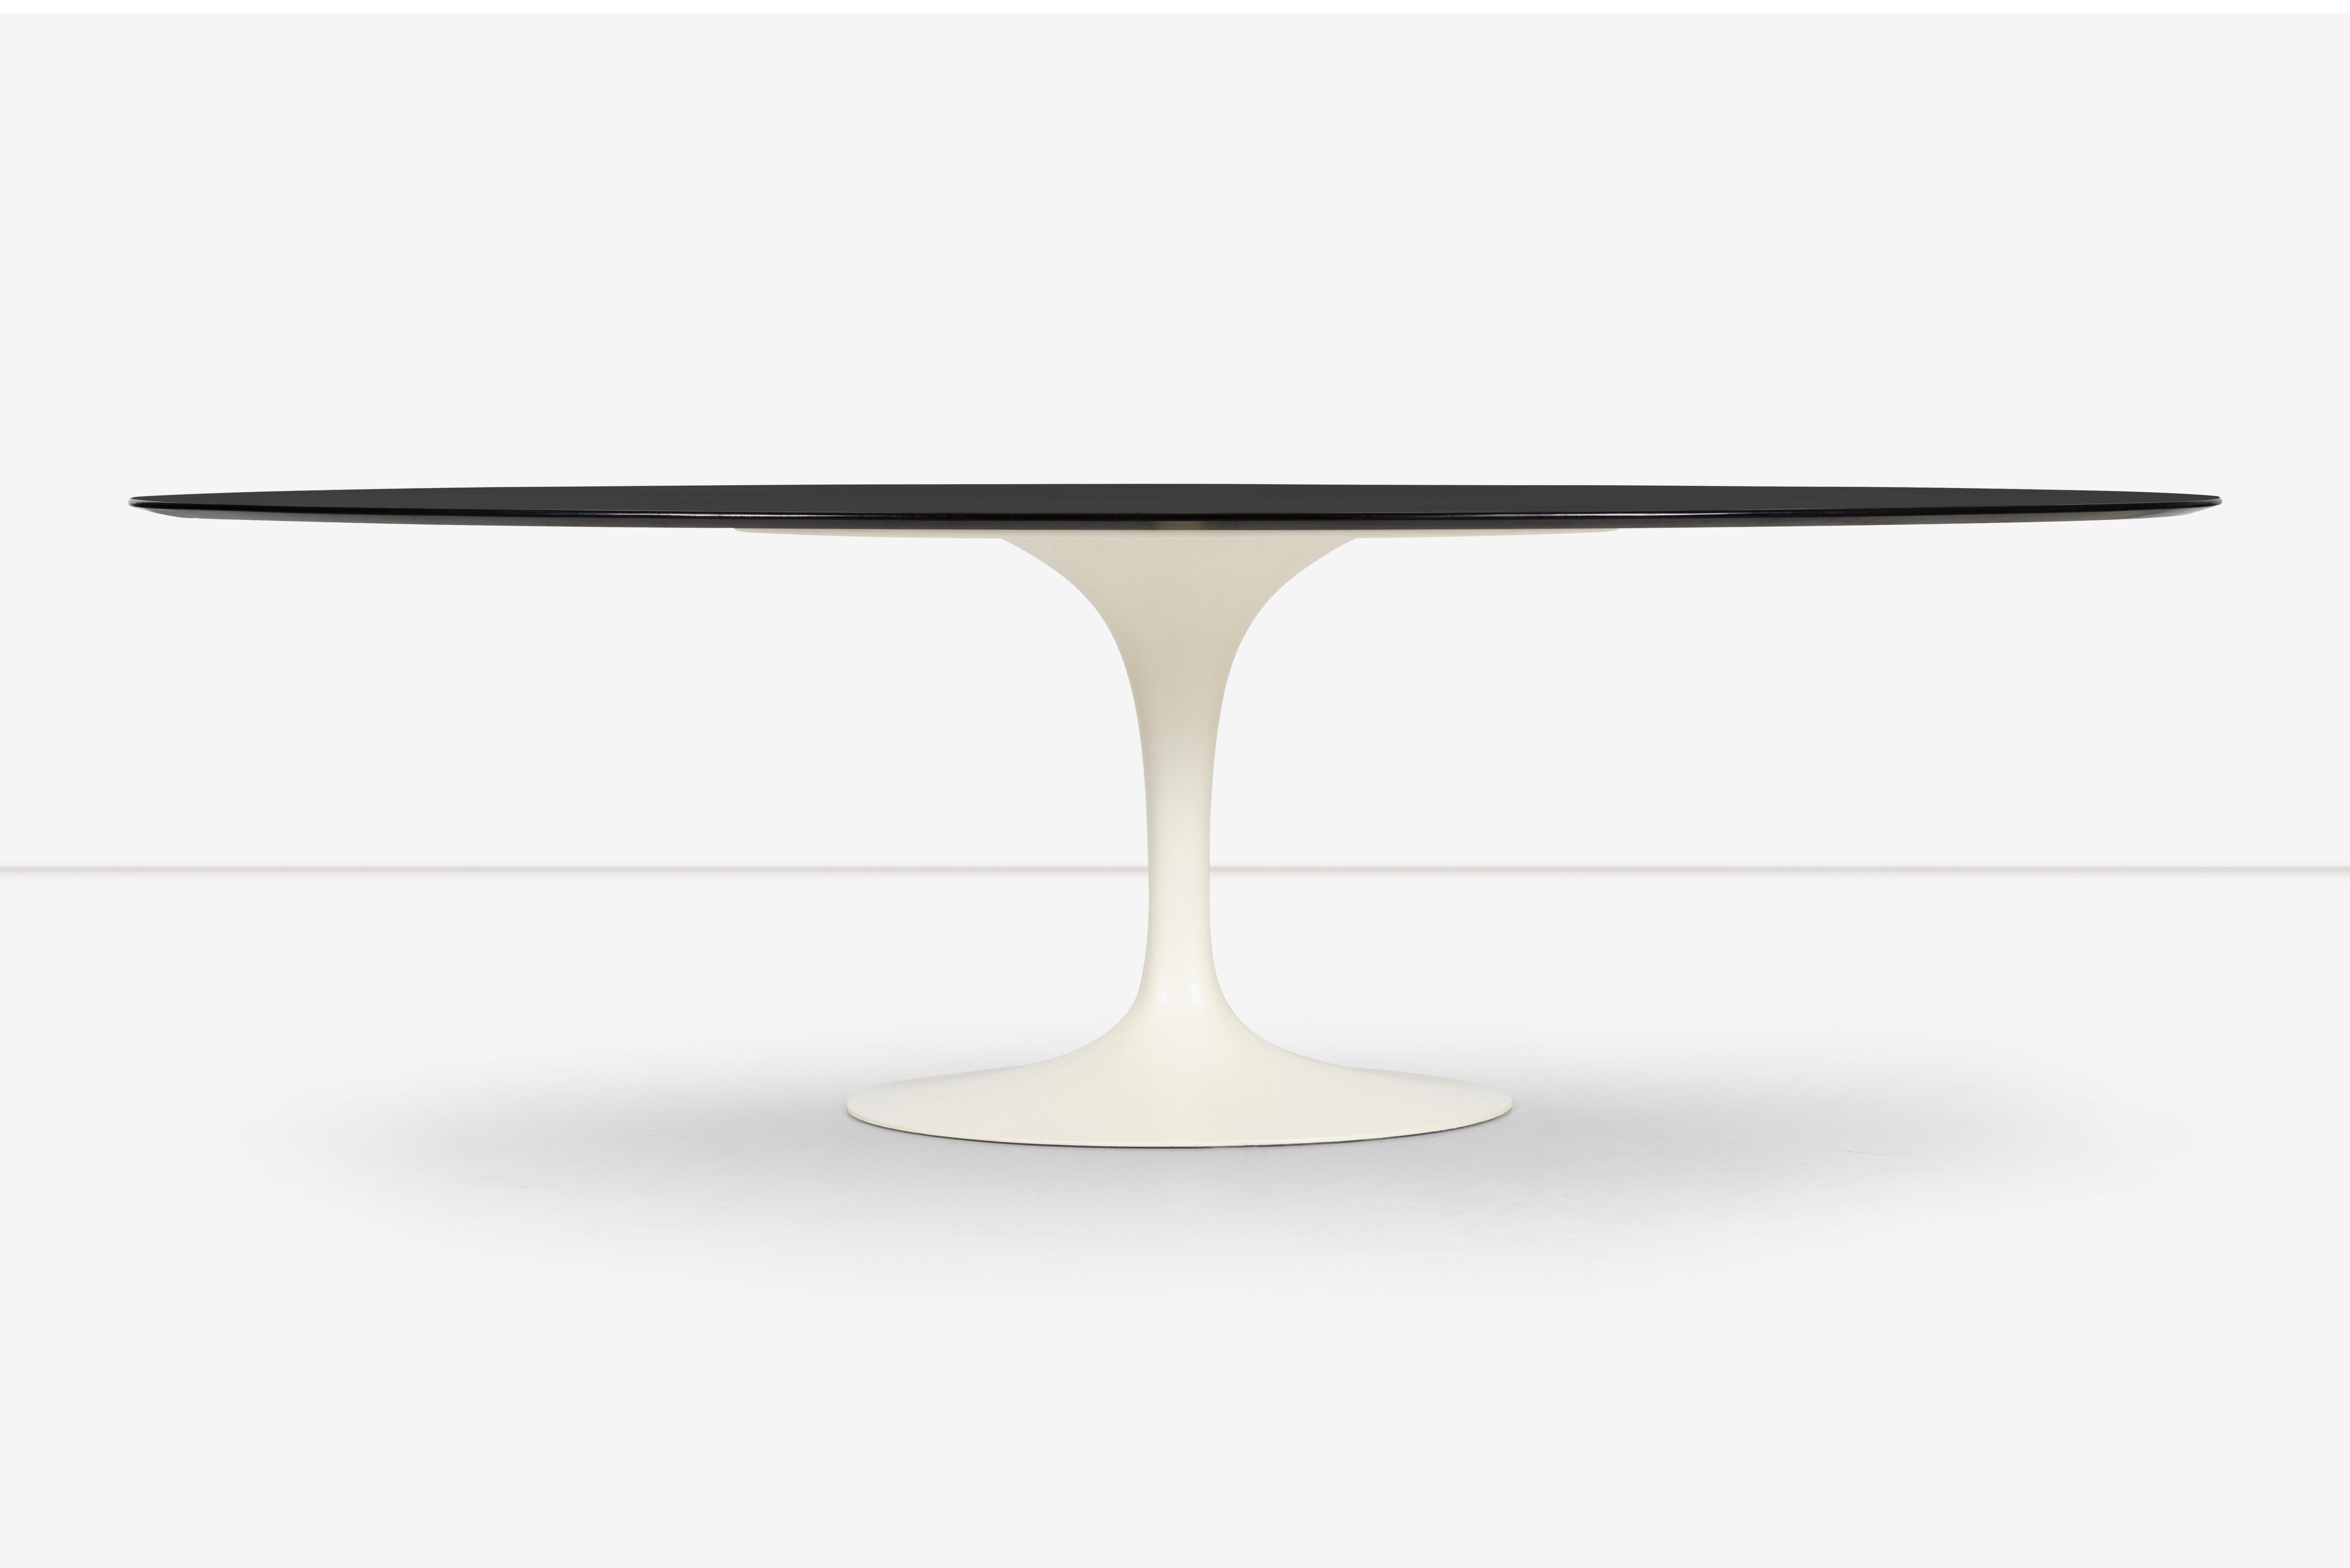 Der Tulip Table von Eero Saarinen für Knoll ist ein klassisches und ikonisches Möbelstück, das seit seiner Erschaffung in den 1950er-Jahren eine wichtige Stütze des modernen Designs ist. Das unverwechselbare Design des Tisches zeichnet sich durch